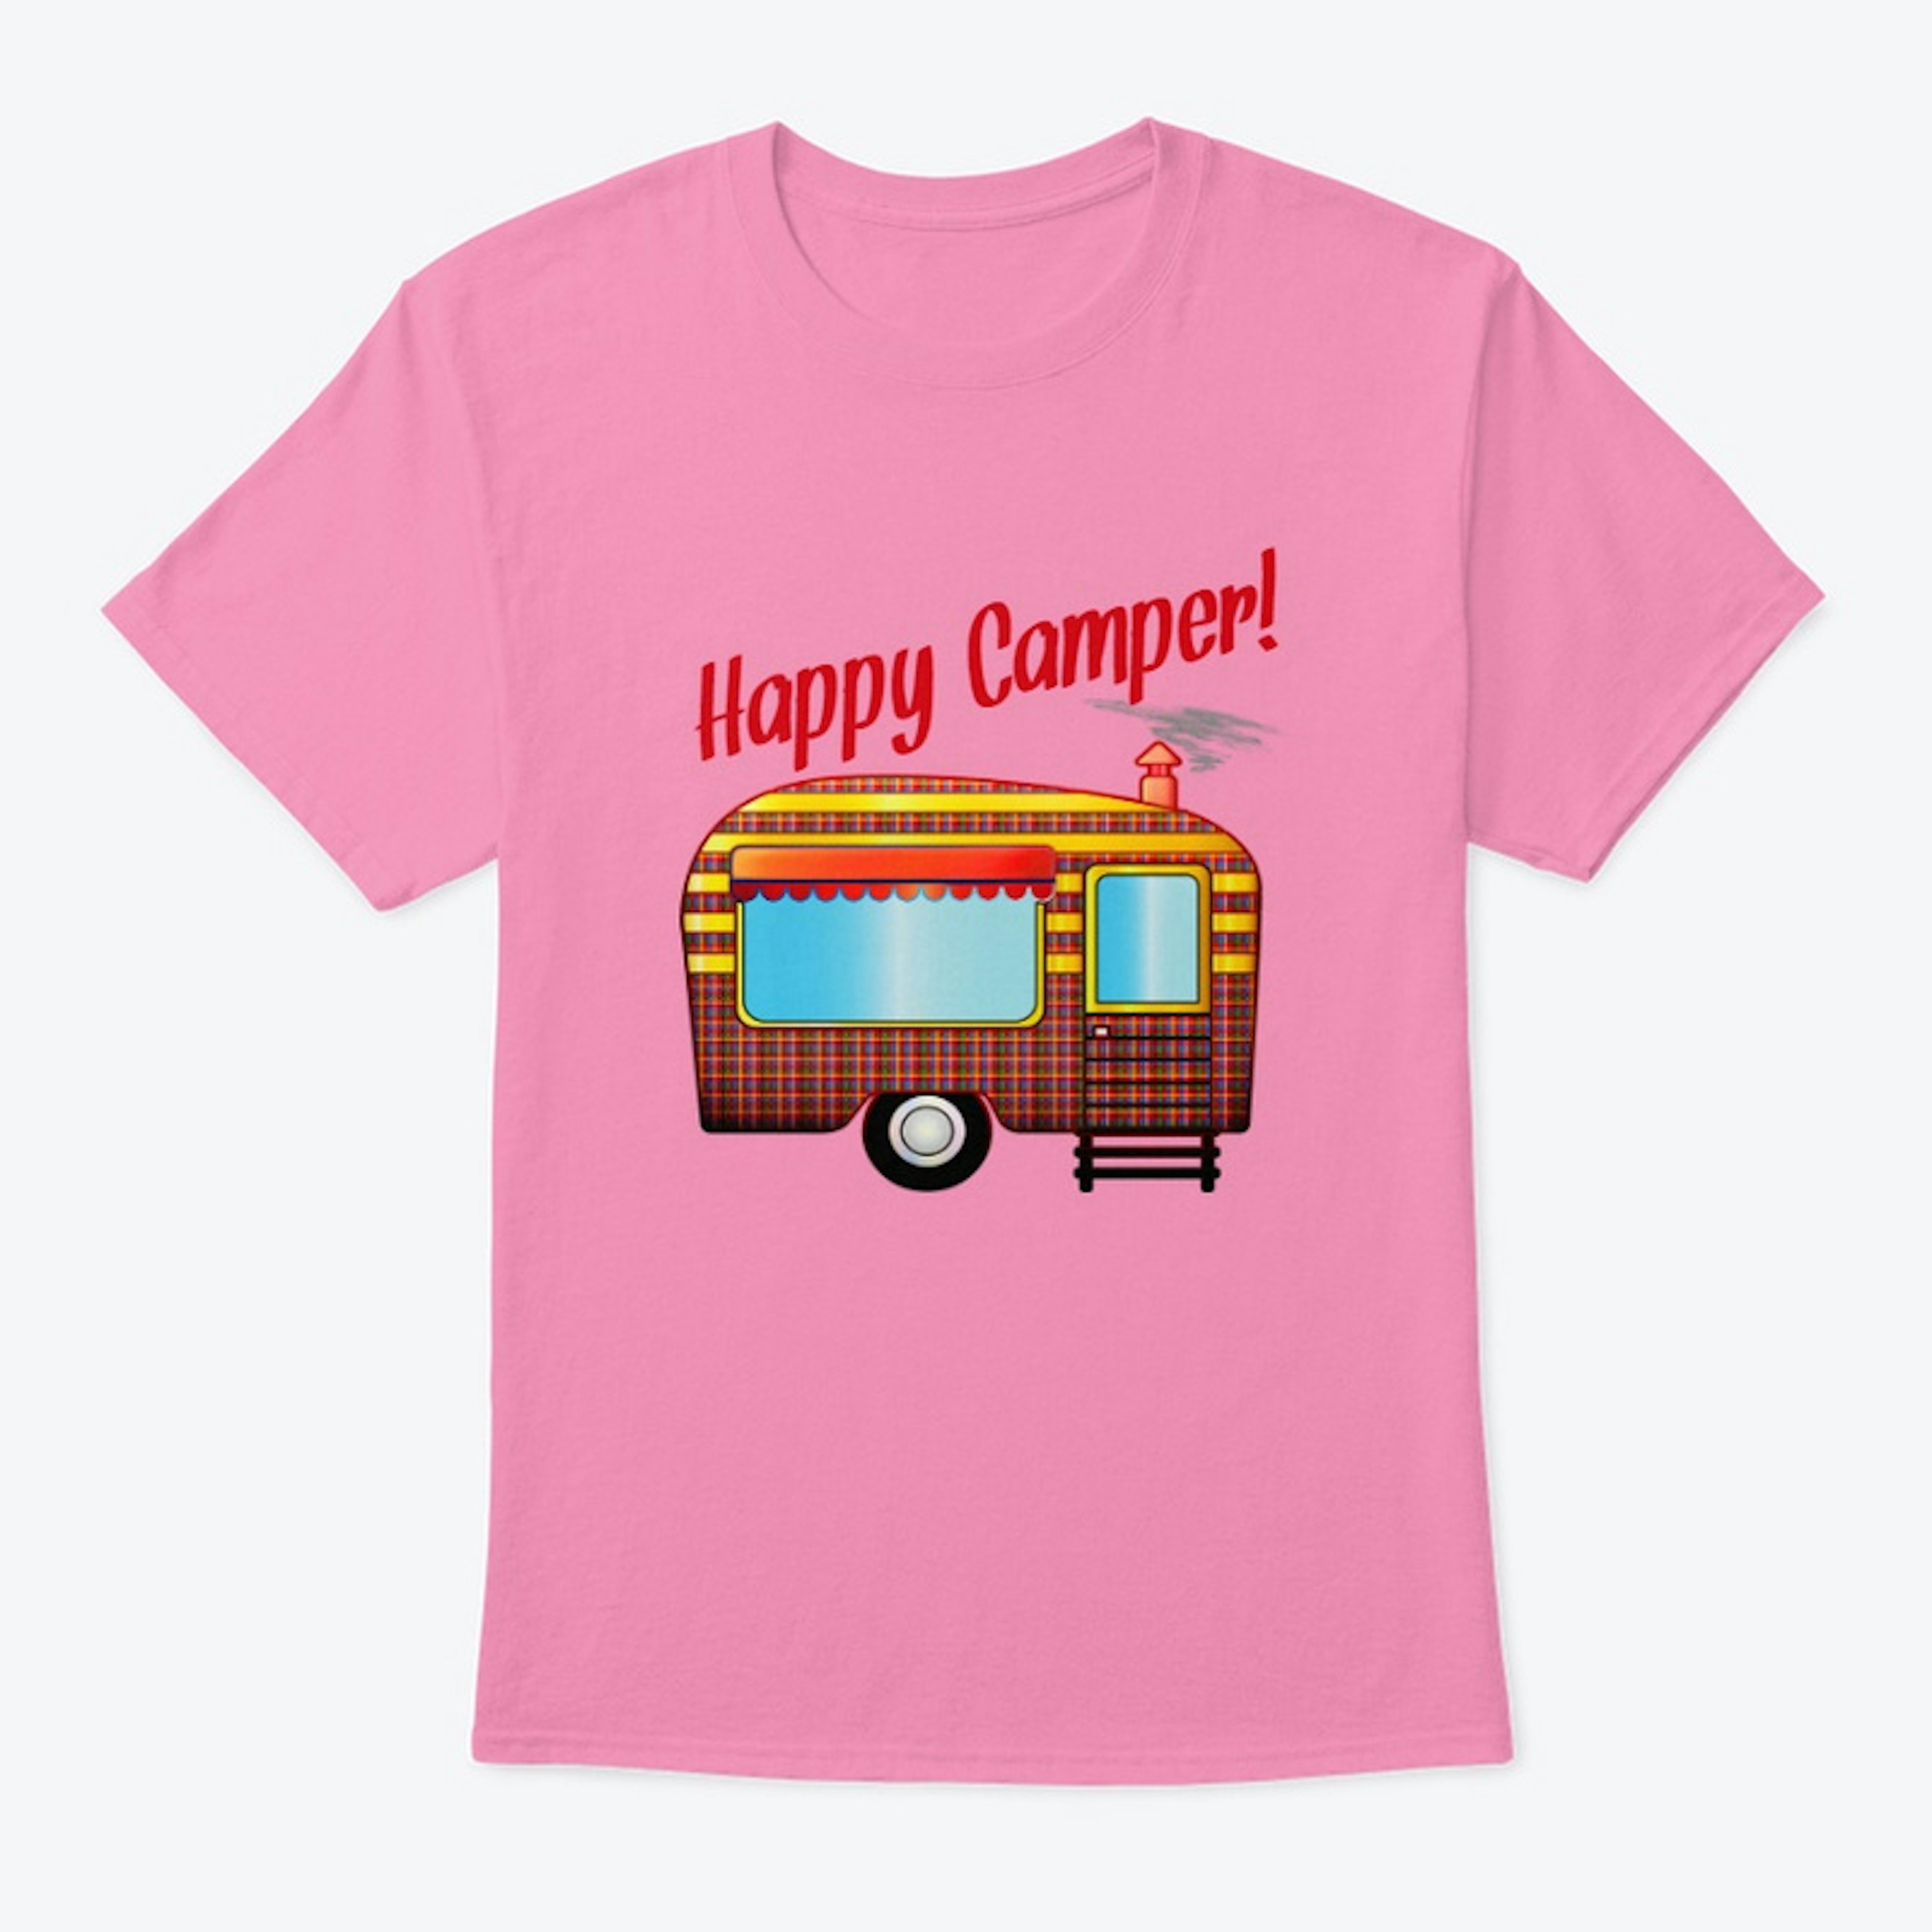 Happy Camper vintage trailer logo tee